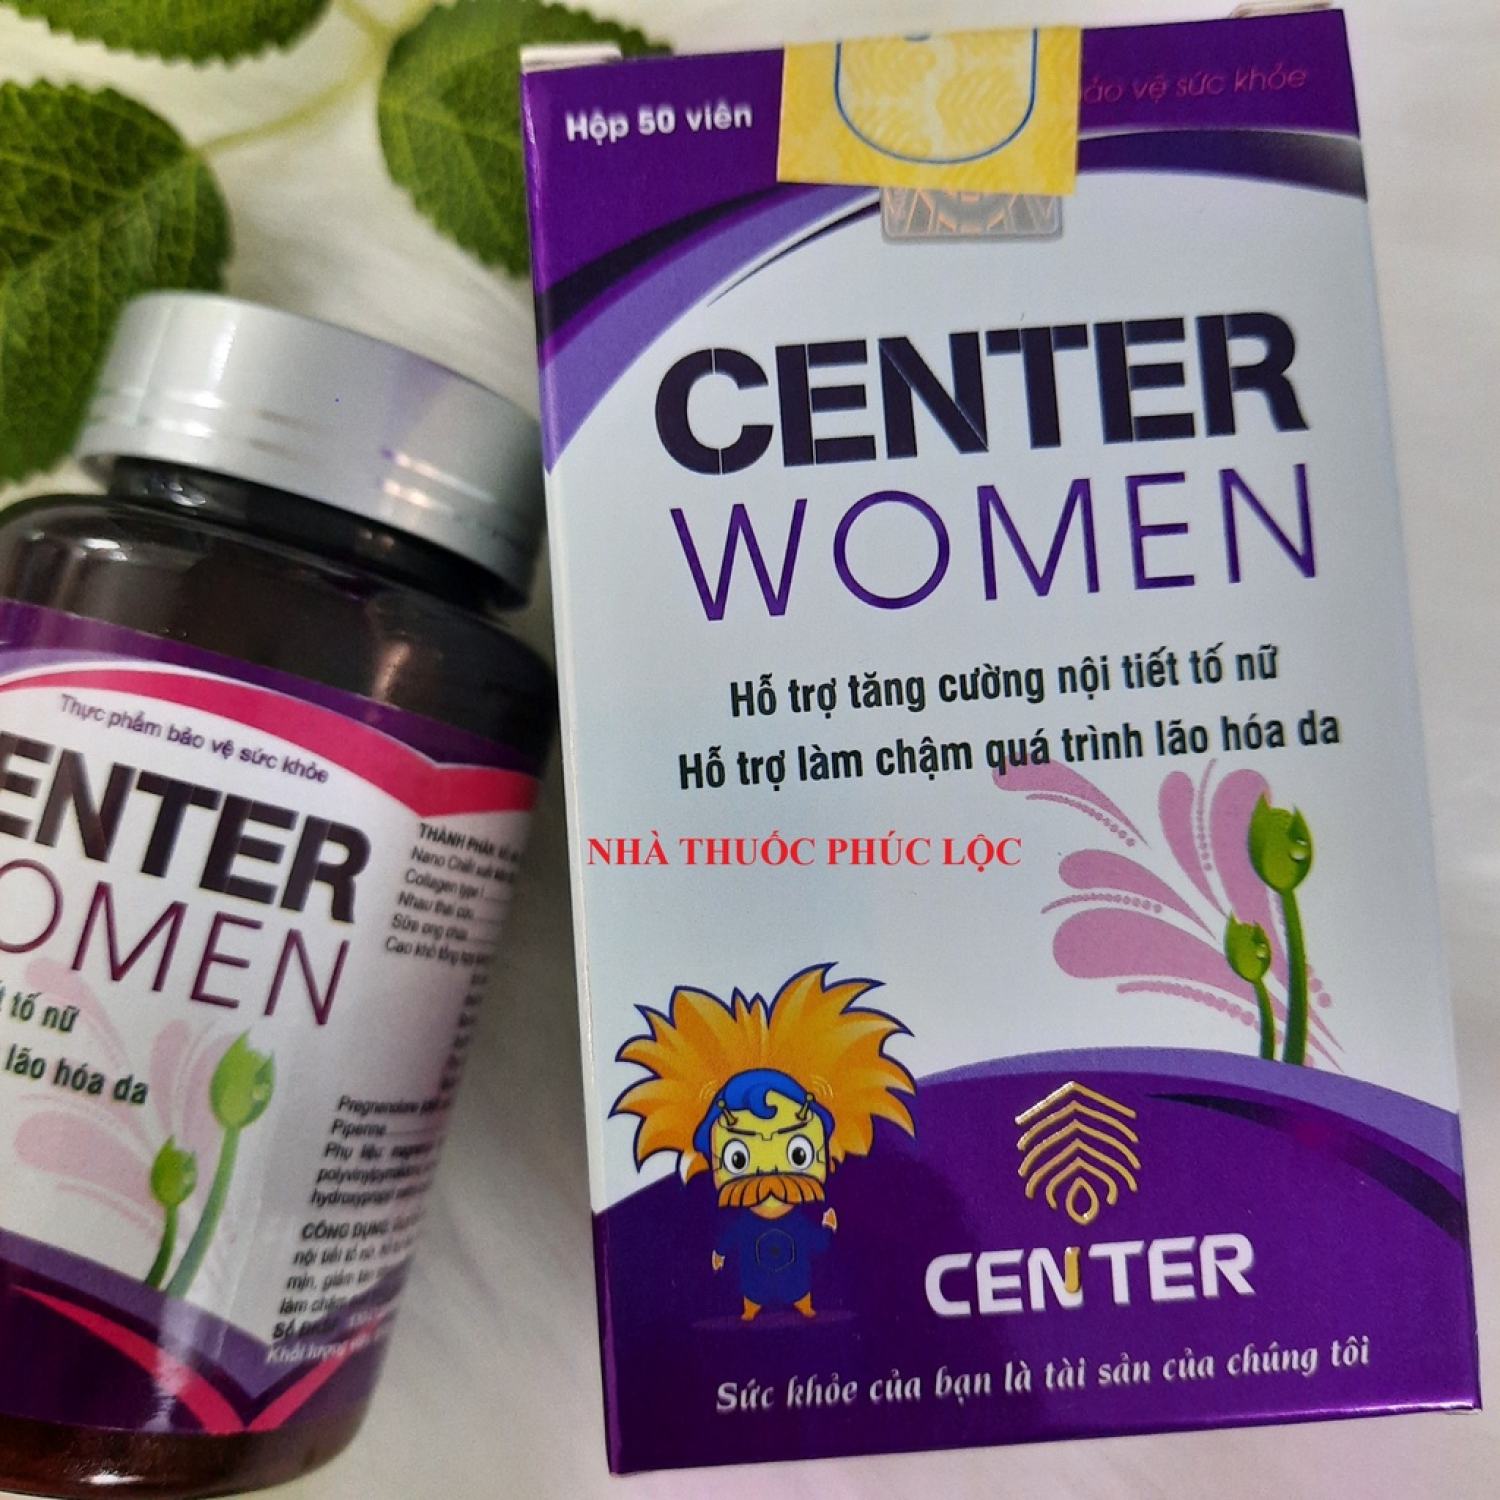 Center Woment, viên uống bổ sung nội tiết tố nữ,giảm khô da, sạm da, nám da